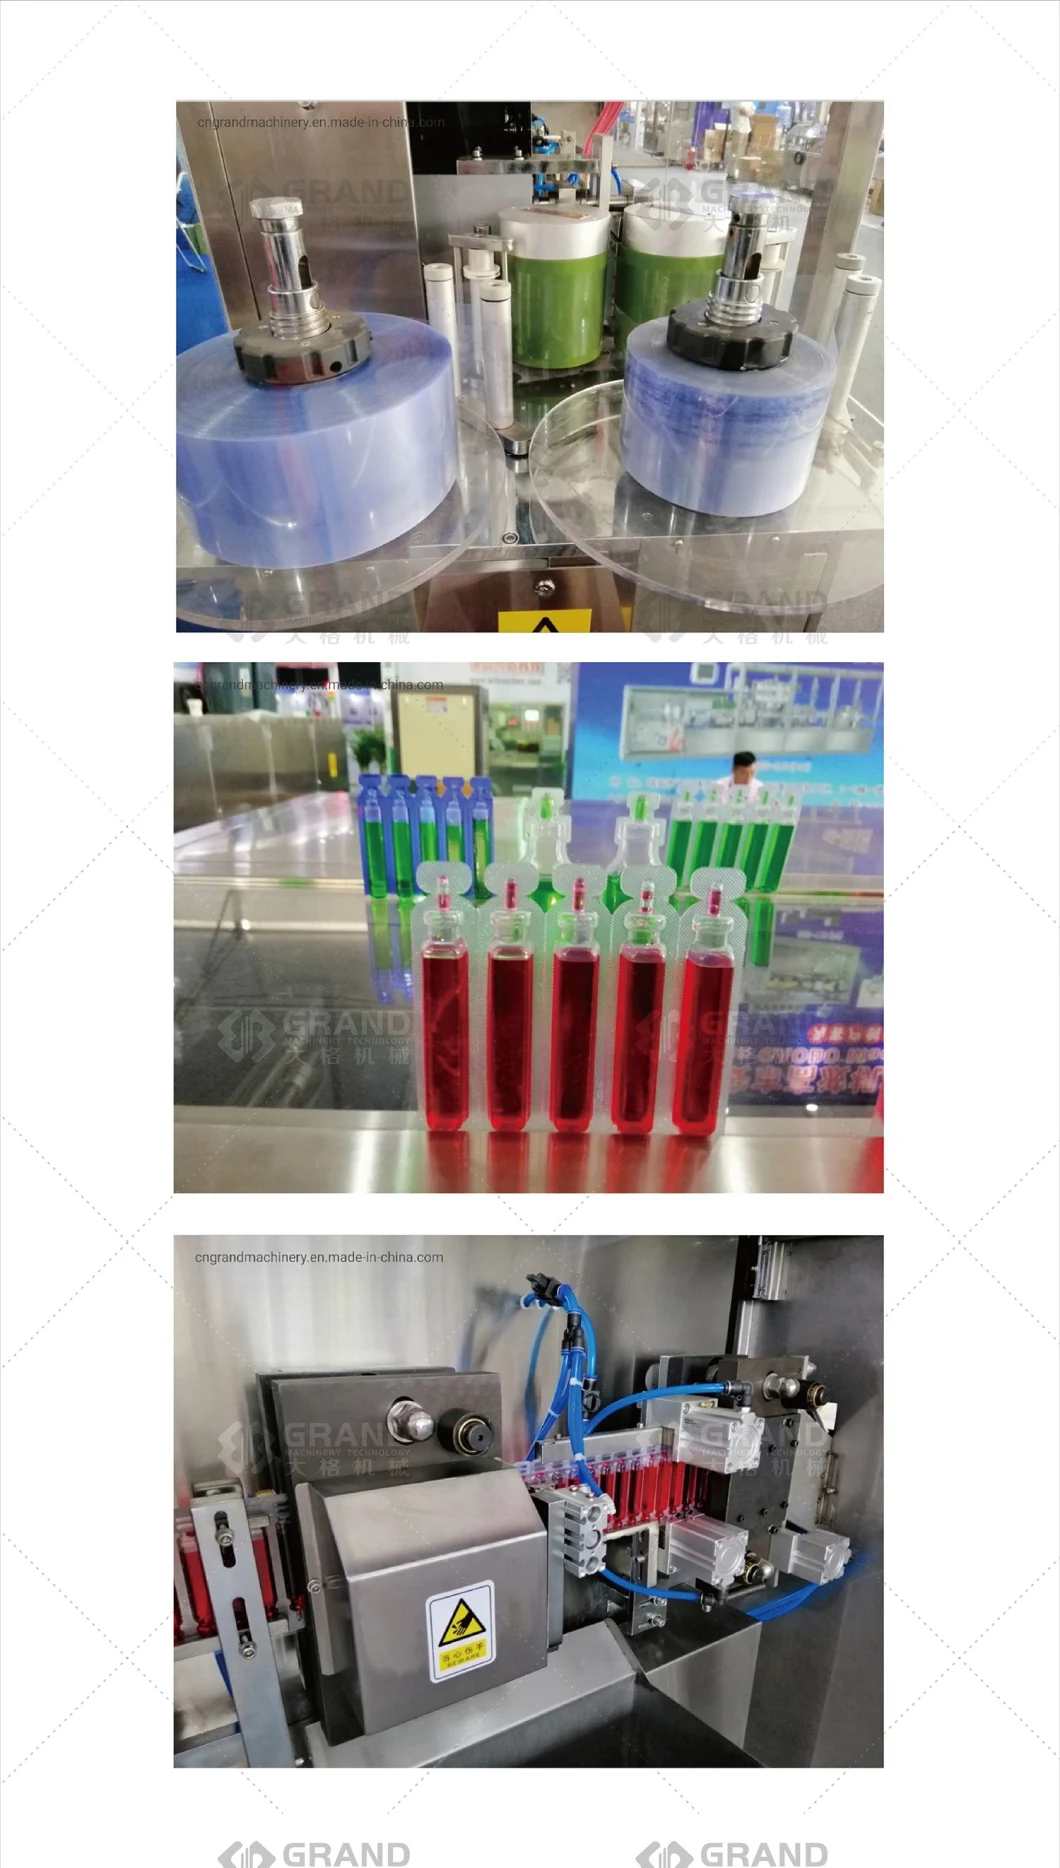 GGS-118 P5 plástico máquina de enchimento de ampola para líquido oral / mel / azeite / líquido frasco / soja / molho / perfume / de pesticida / de óleo essencial / de xarope com máquinas de rotulagem